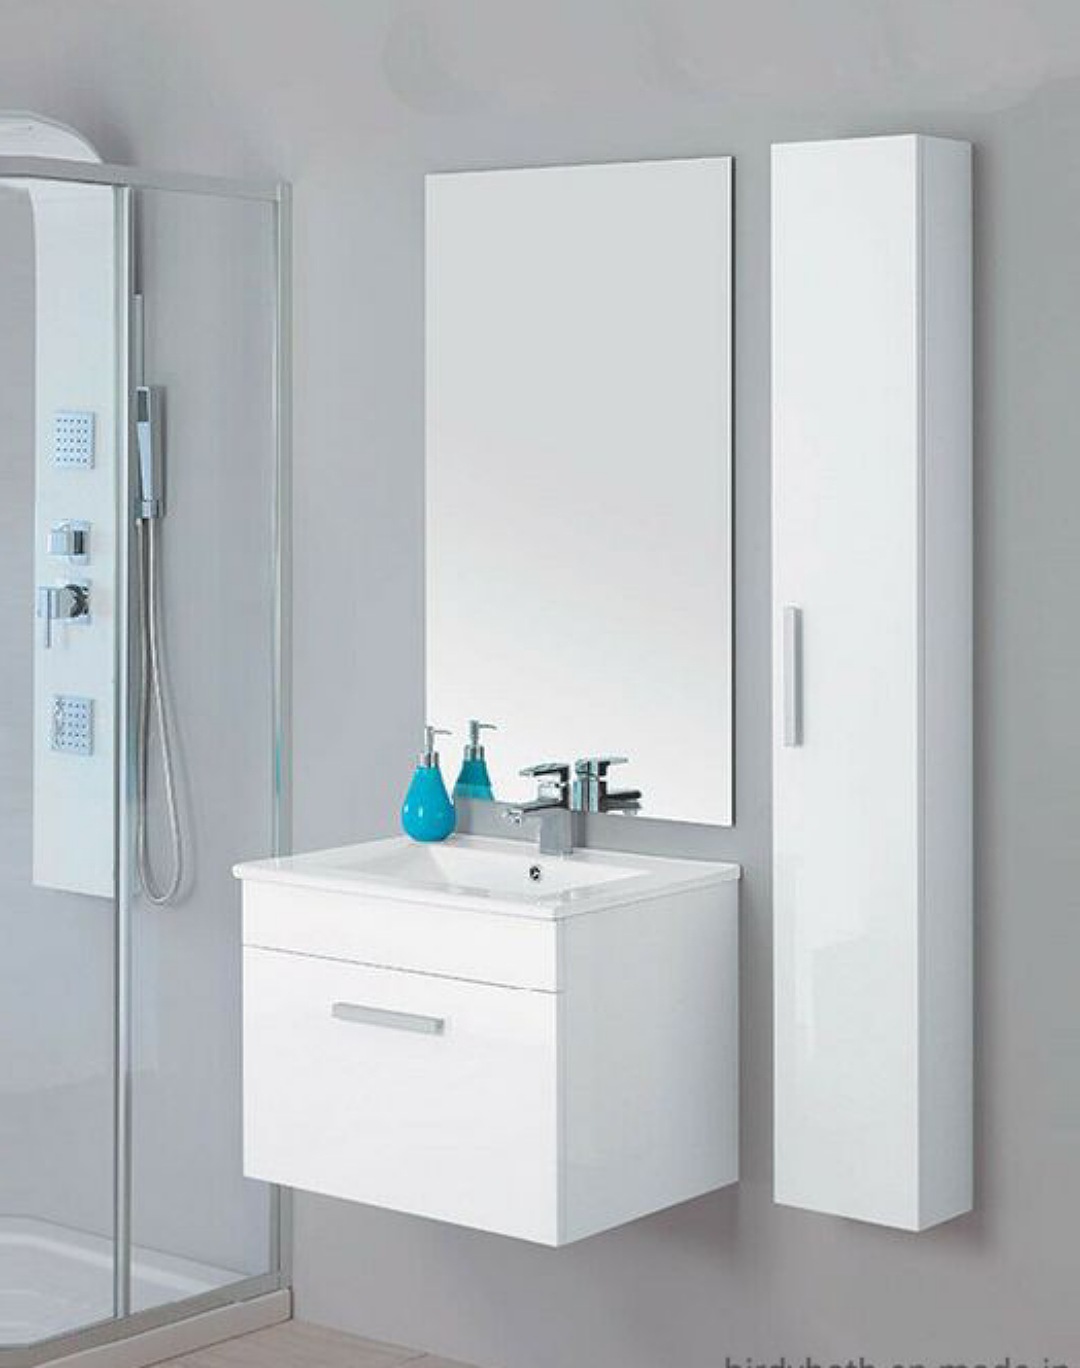 Deco White bathroom cabinets